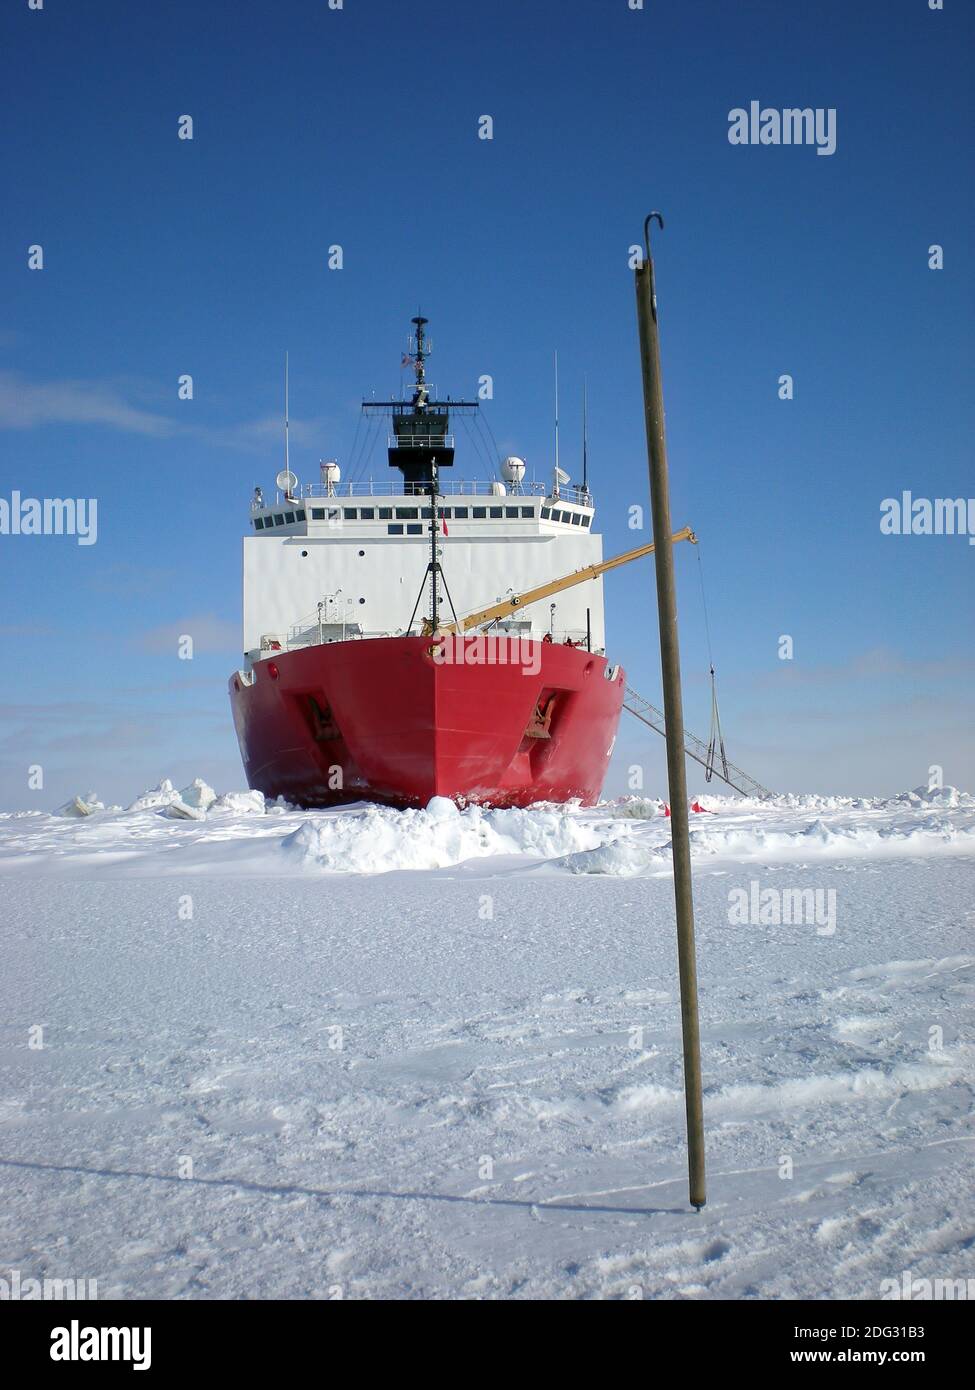 Bâton d'essai de glace indigène arctique. Un bâton d'essai de glace indigène d'Alaska, appelé « unghaq », peut être vu dépassant de la glace au premier plan, tandis que le brise-glace de la Garde côtière américaine Healy est en arrière-plan. Le crochet visible au sommet du bâton est utilisé pour récupérer des choses, comme saisir les vêtements d'un individu s'ils tombent dans l'eau, et l'autre extrémité est utilisée pour poquer la glace. Les Unghaqs sont un outil de sécurité très apprécié pour les Alaskans qui vivent dans des communautés côtières et s'aventurent sur la glace pour la chasse en hiver. Banque D'Images